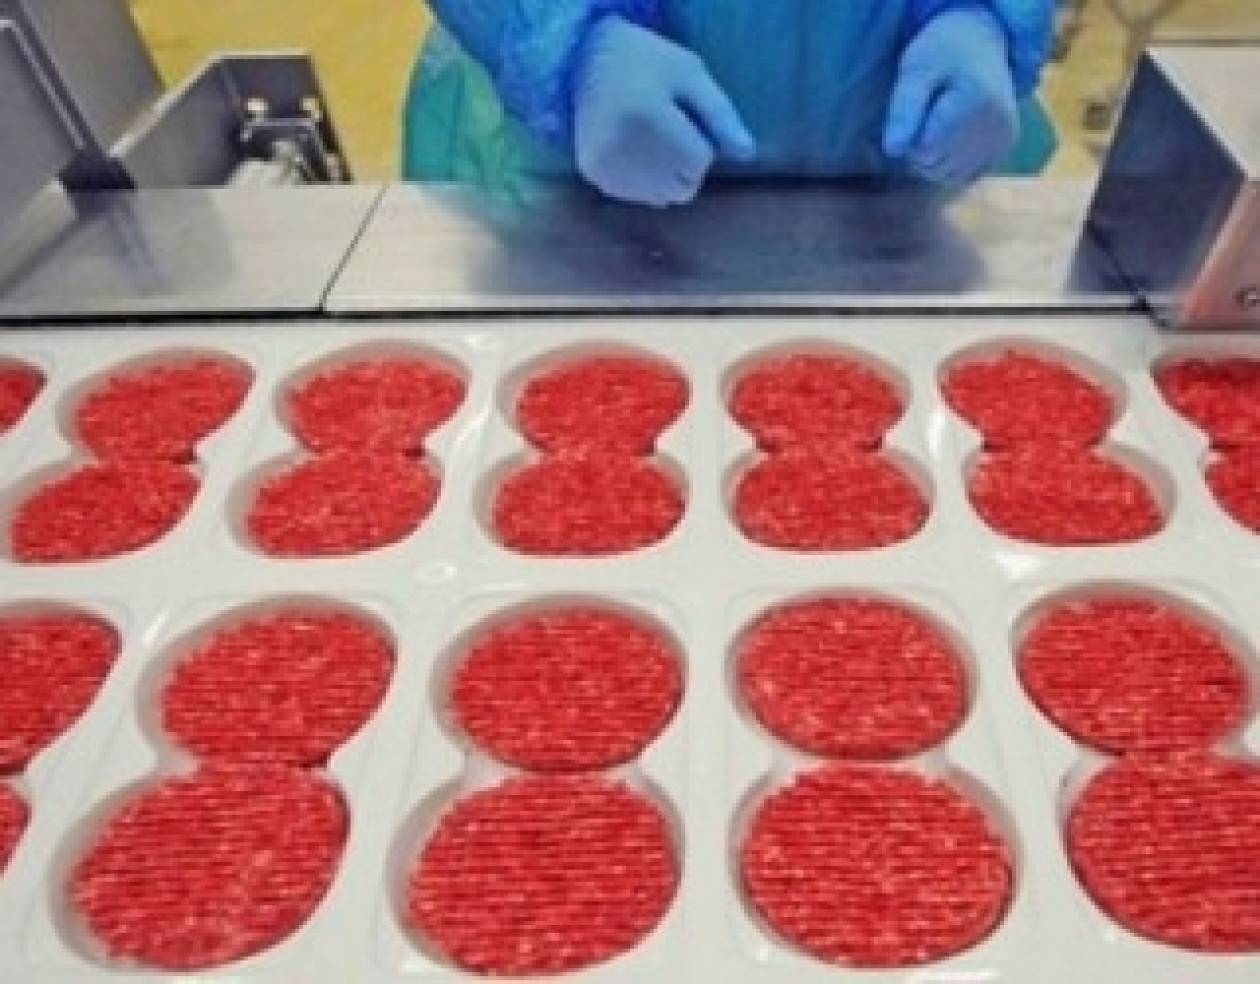 ΕΦΕΤ: Σε επτά δείγματα τροφίμων ανιχνεύθηκε DNA αλόγου